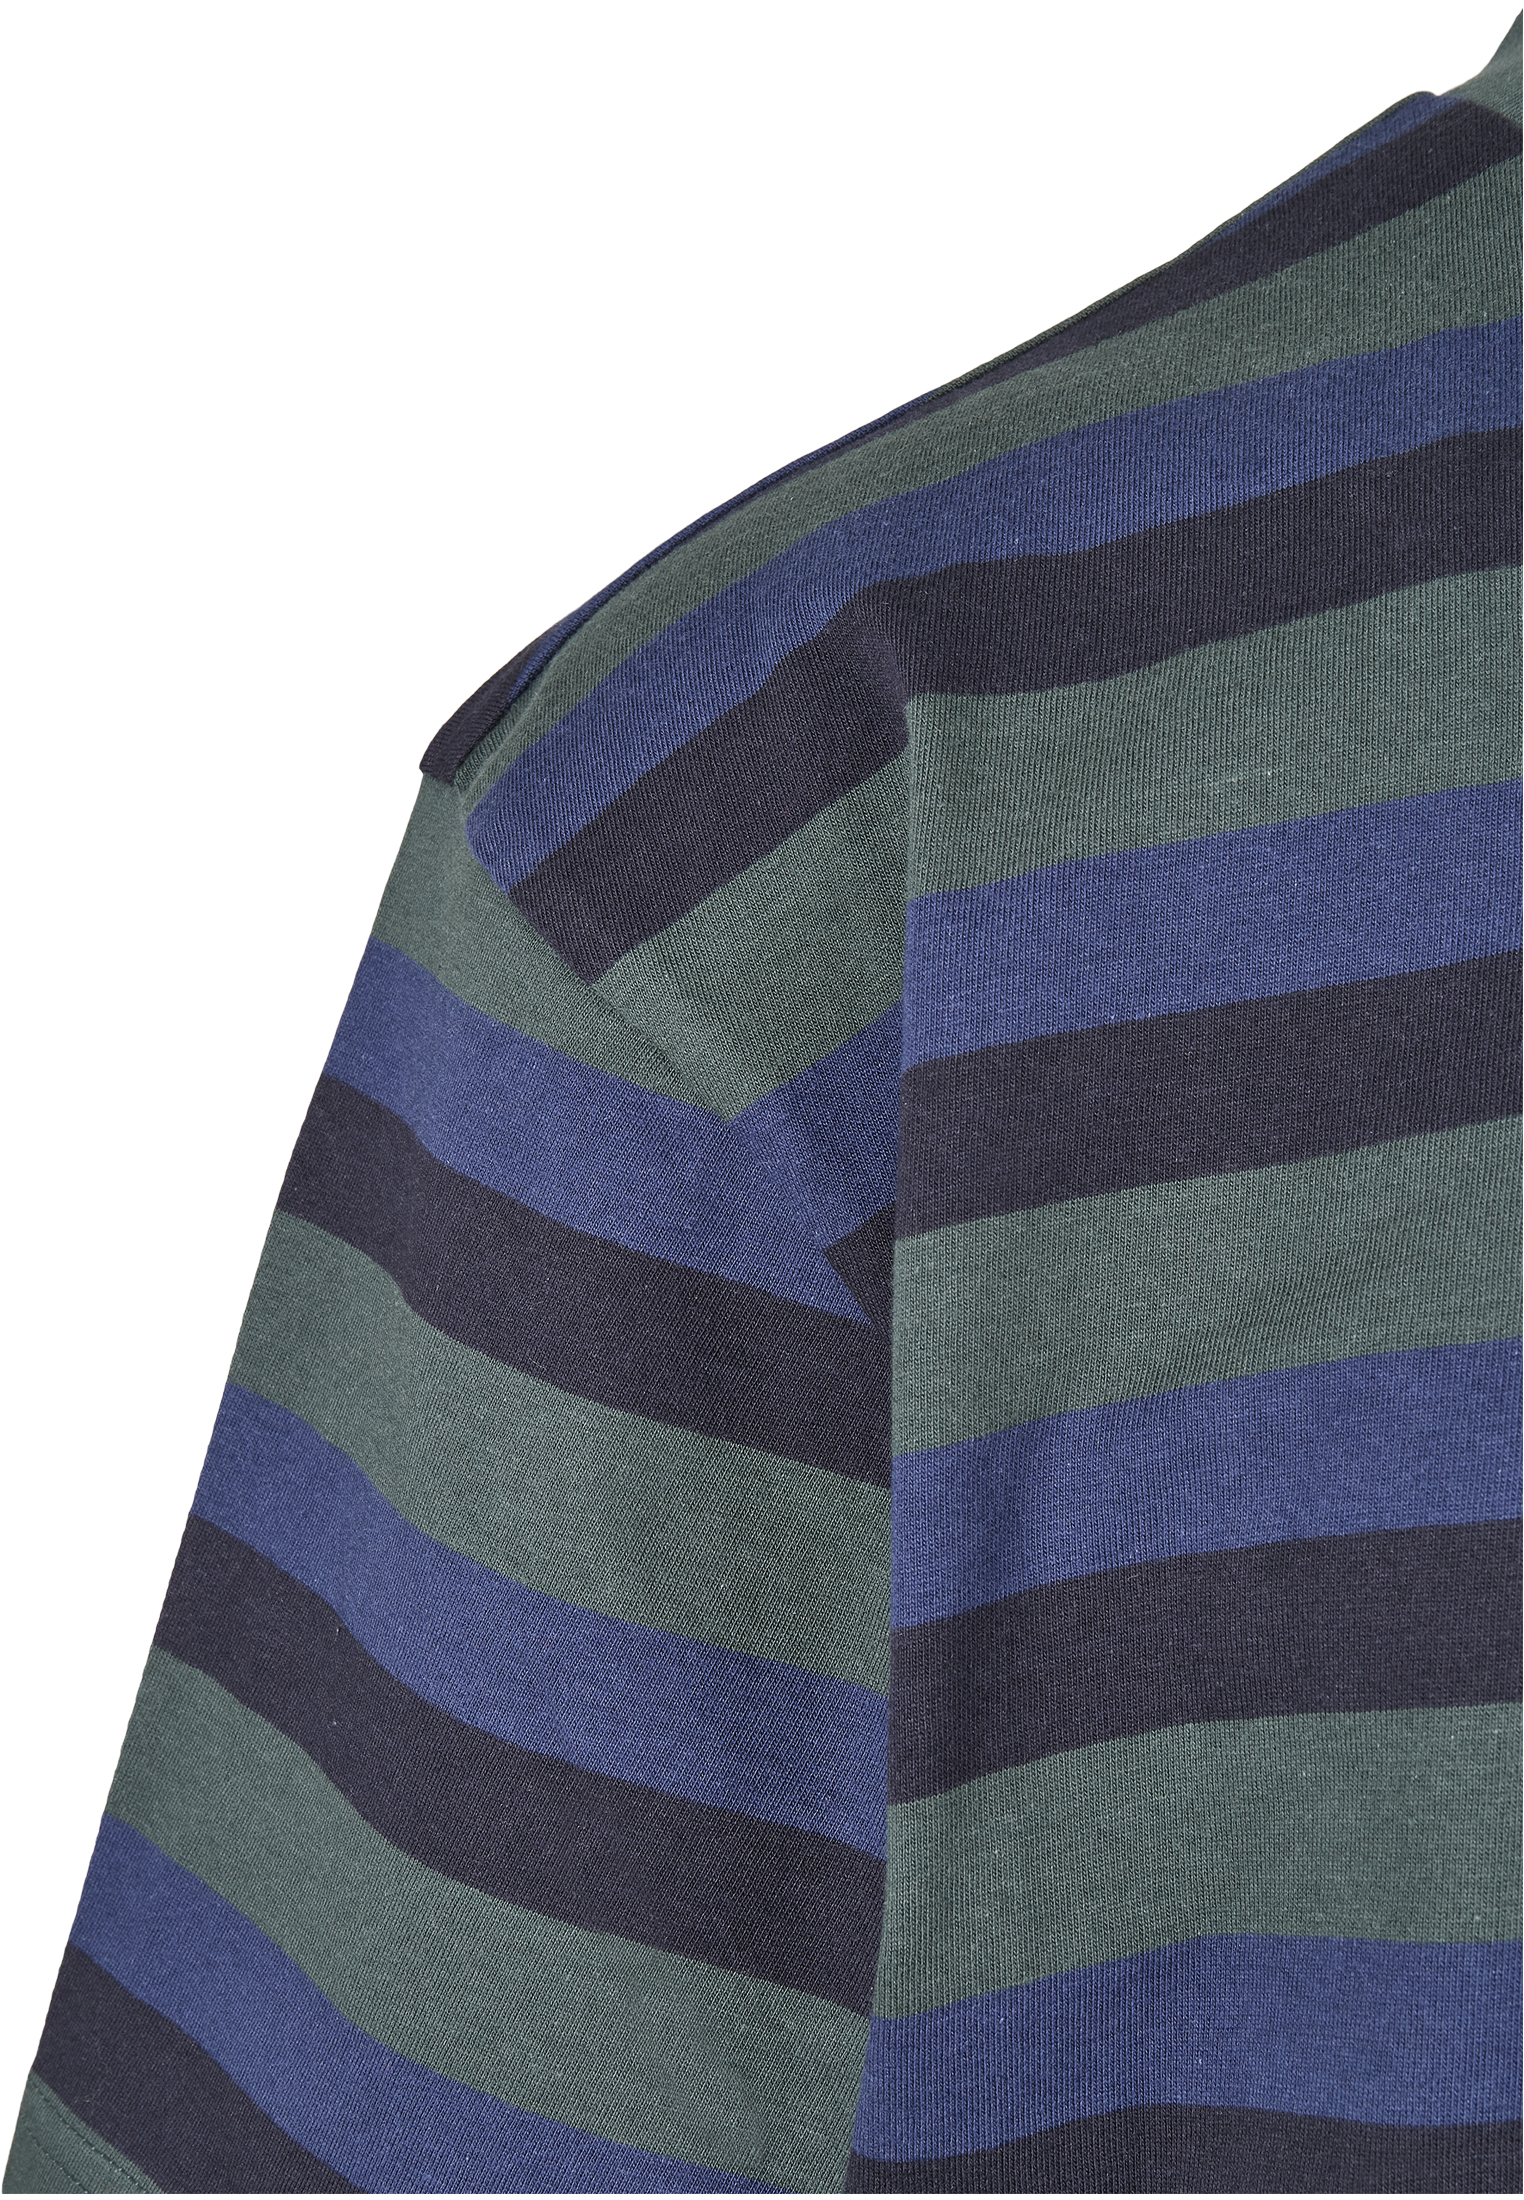 T-Shirts College Stripe Tee in Farbe bottlegreen/midnightnavy